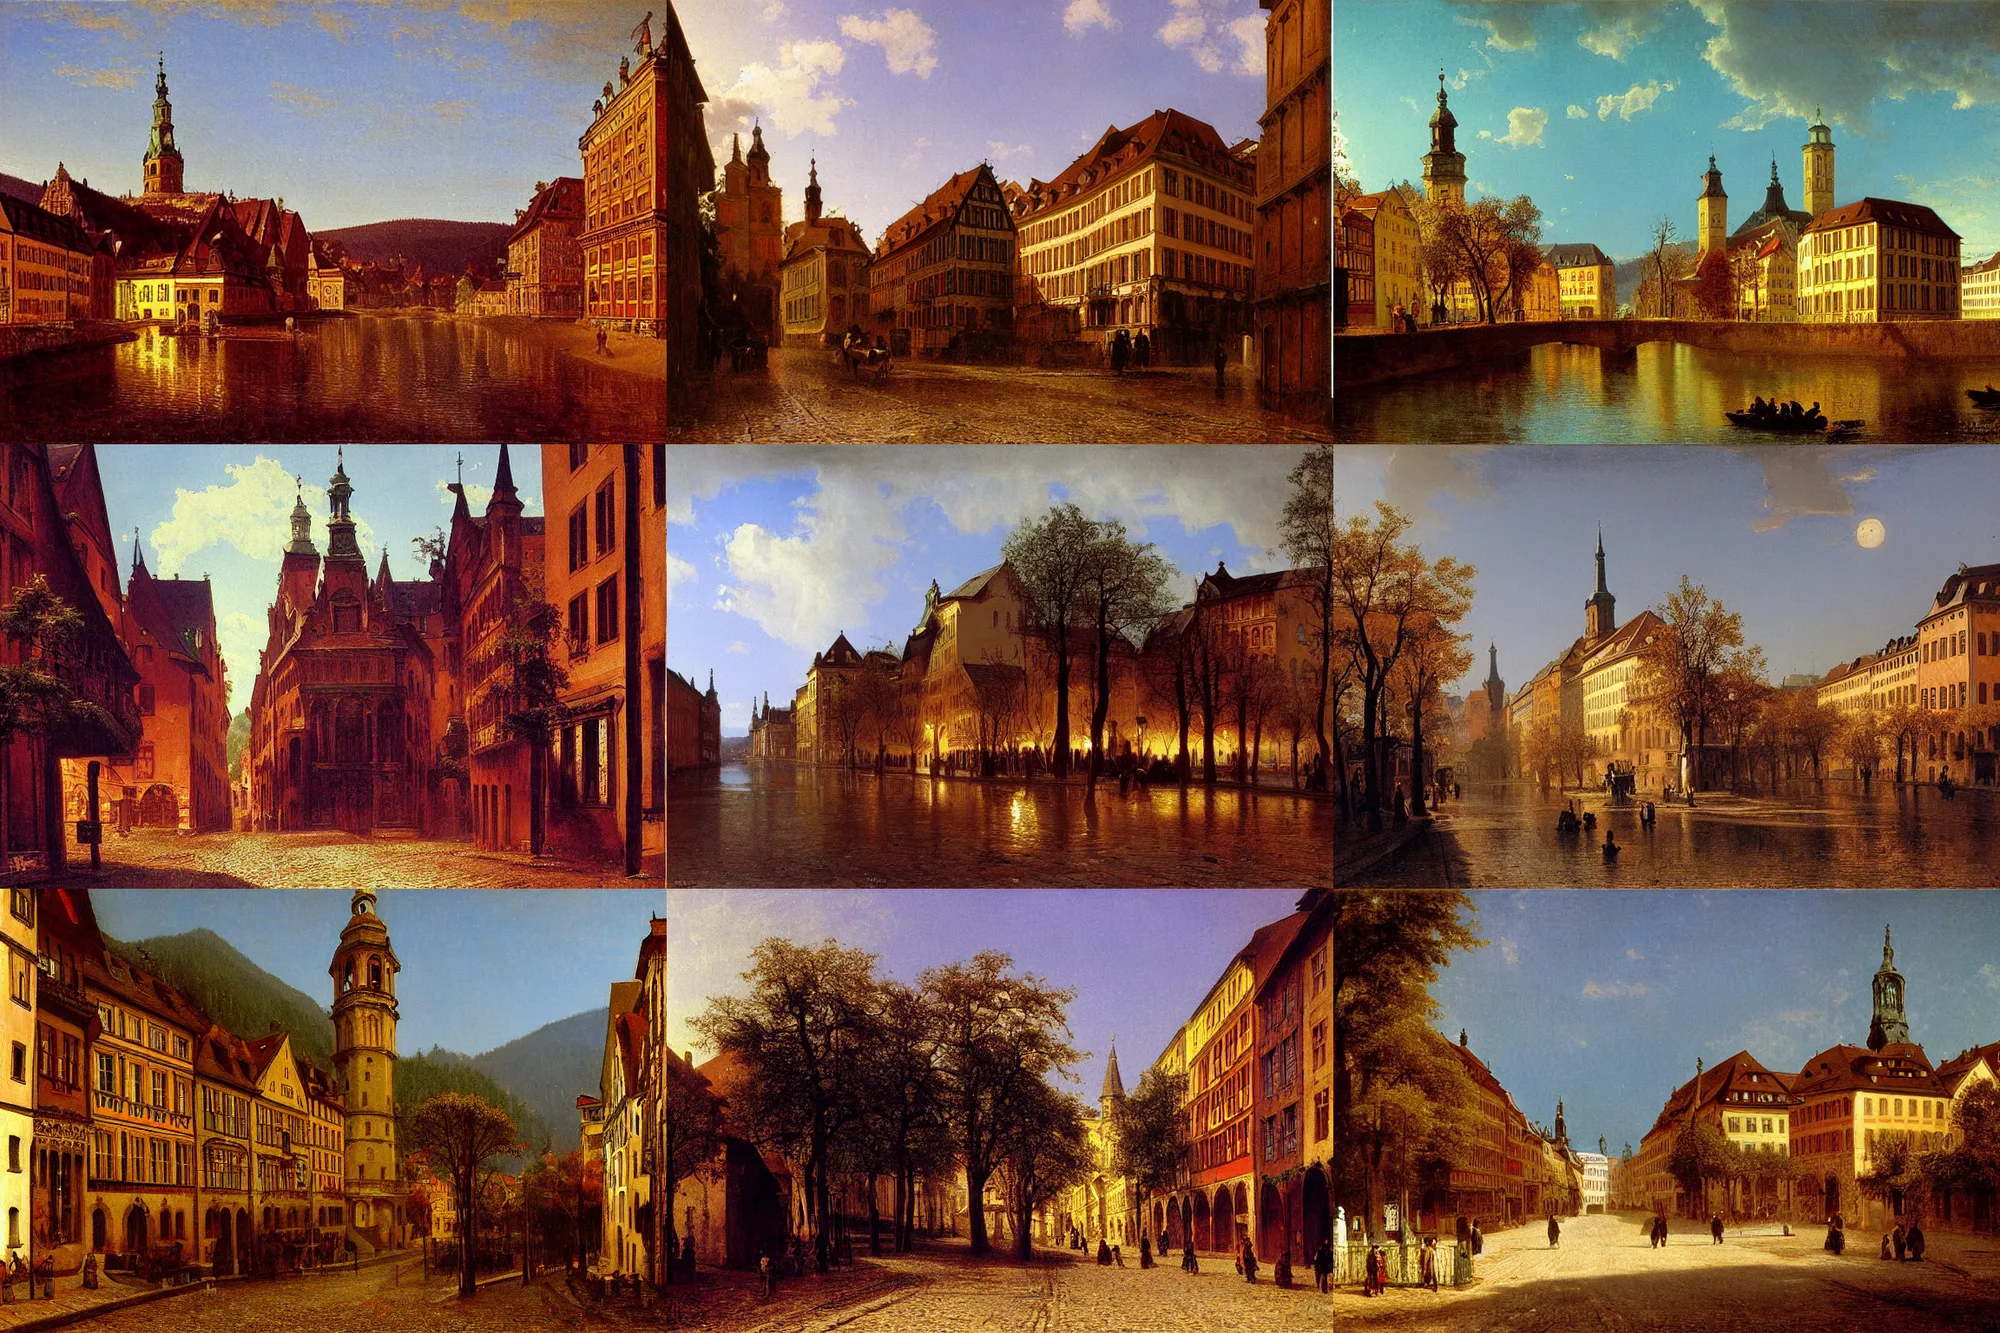 Prompt: Streets of Heidelberg, Germany, 1875, by Albert Bierstadt